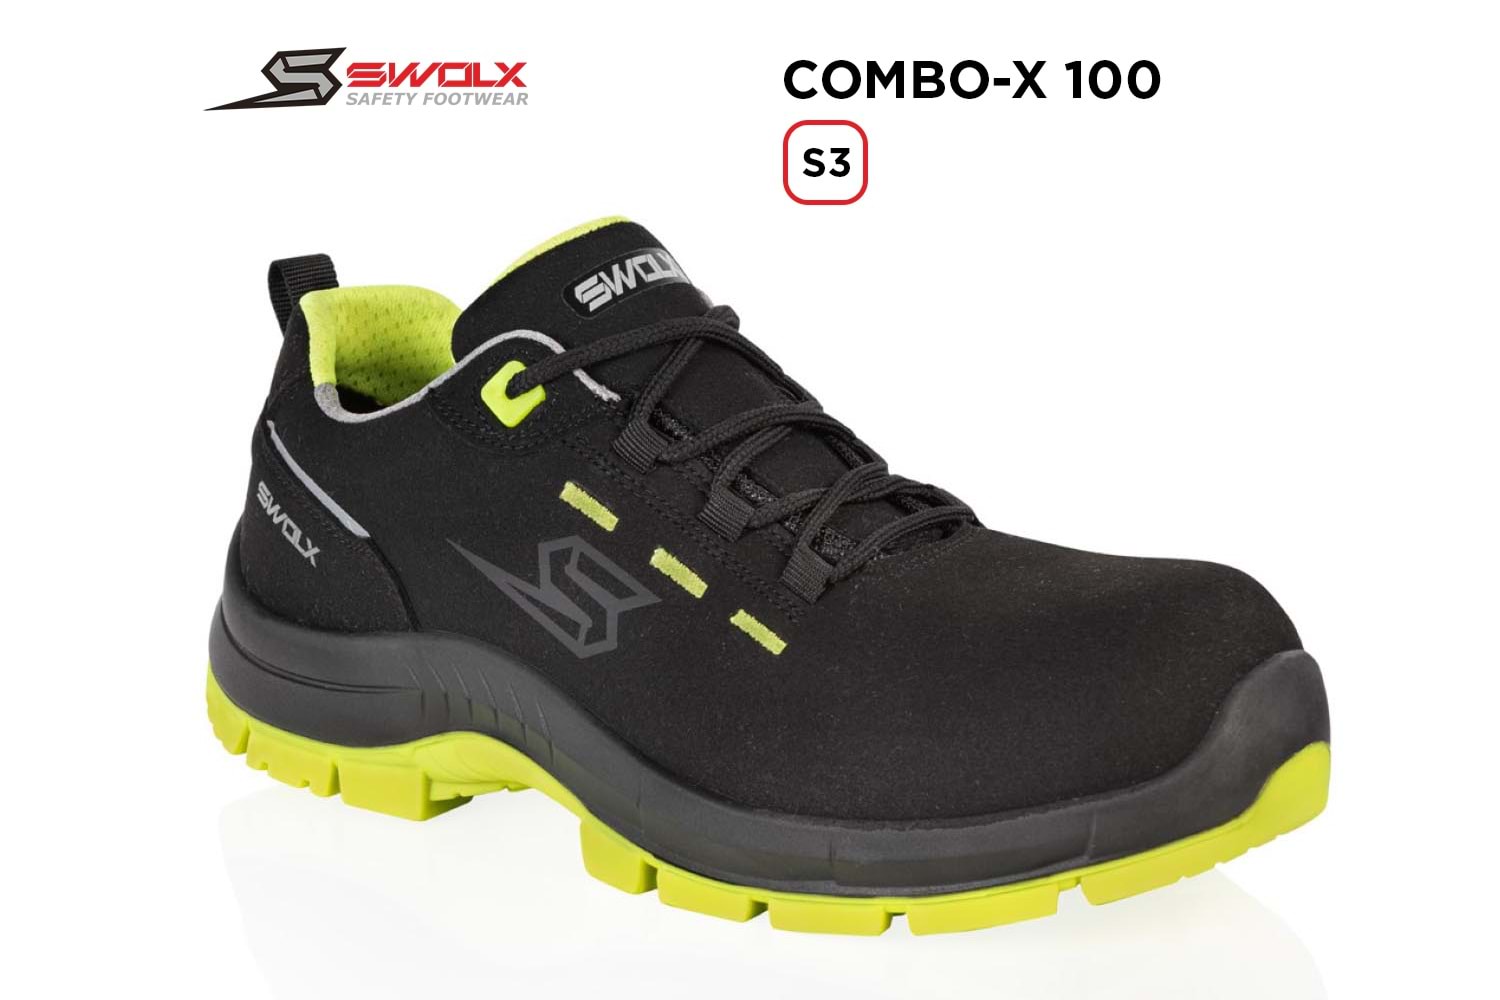 Swolx İş Ayakkabısı - Combo-X 100 S3 - 38